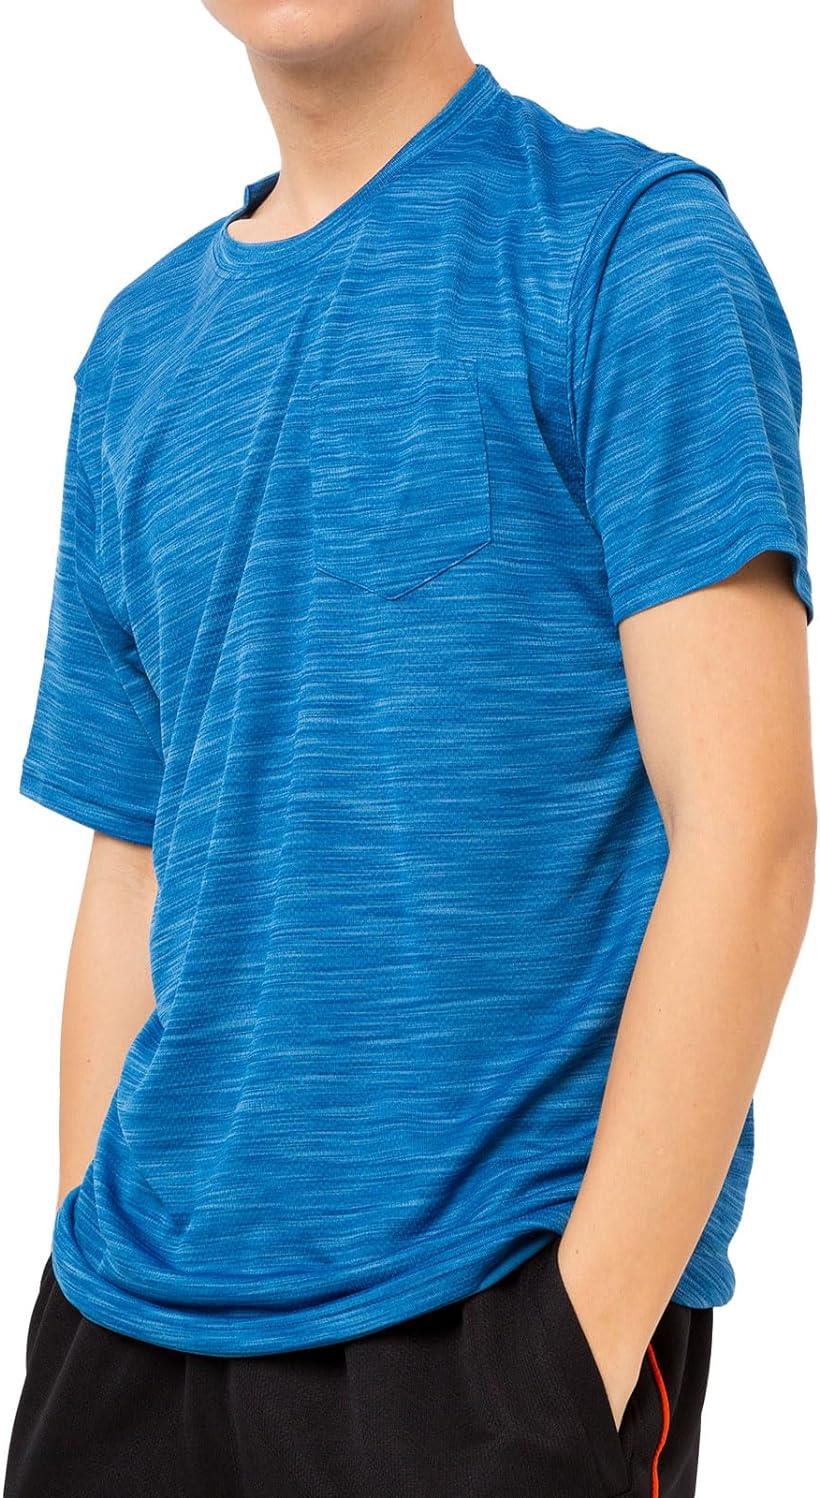 Tシャツ トップス 半袖 メンズ スポーツウェア フィットネスウェア ドライウェア リフレクション DRY 吸汗速乾 接触冷感 ストレッチ LLサイズ( ブルーA, LL)